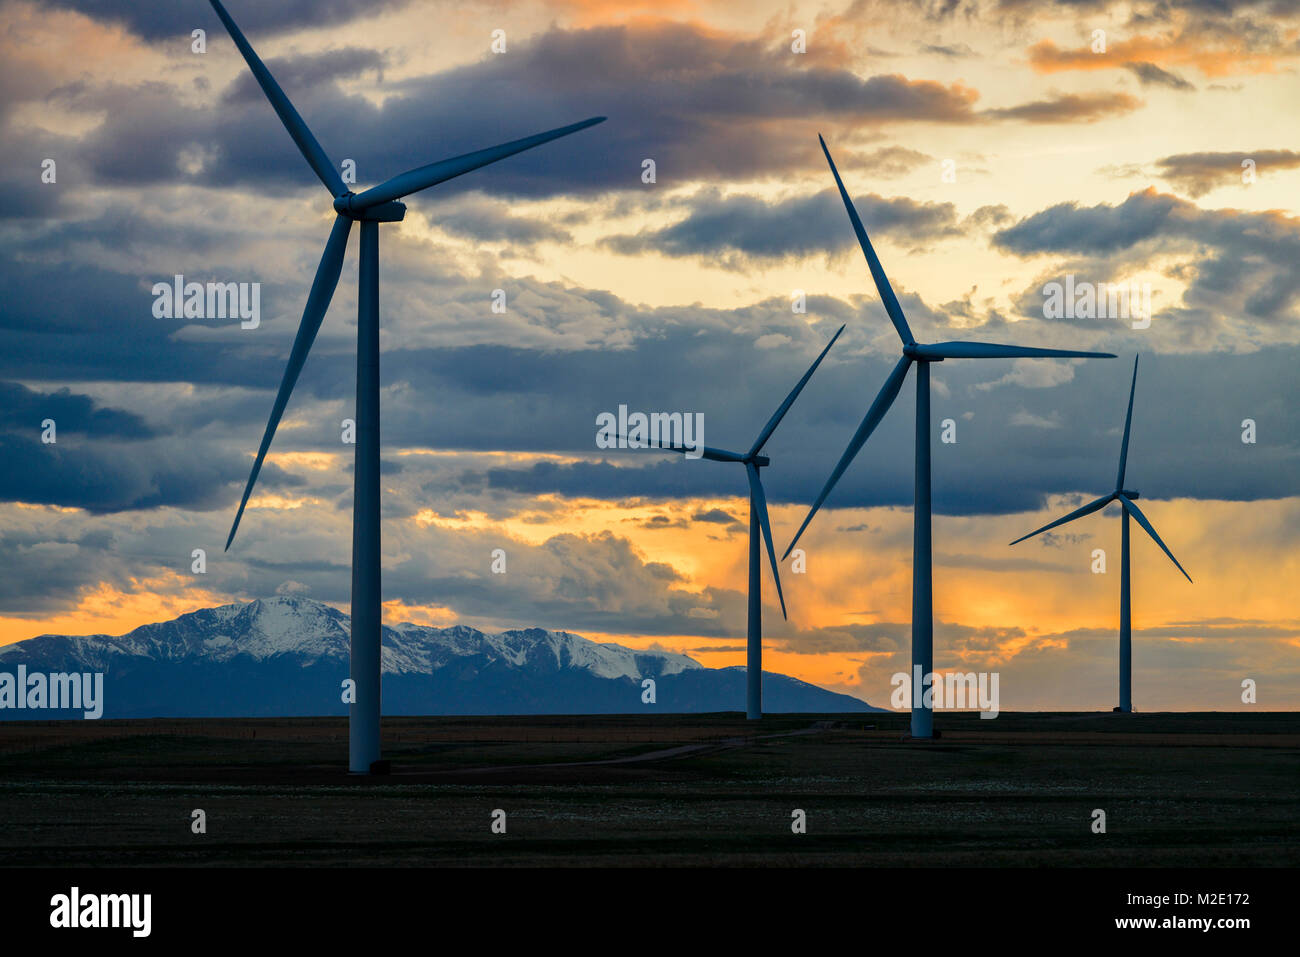 Wind turbines at sunset Stock Photo